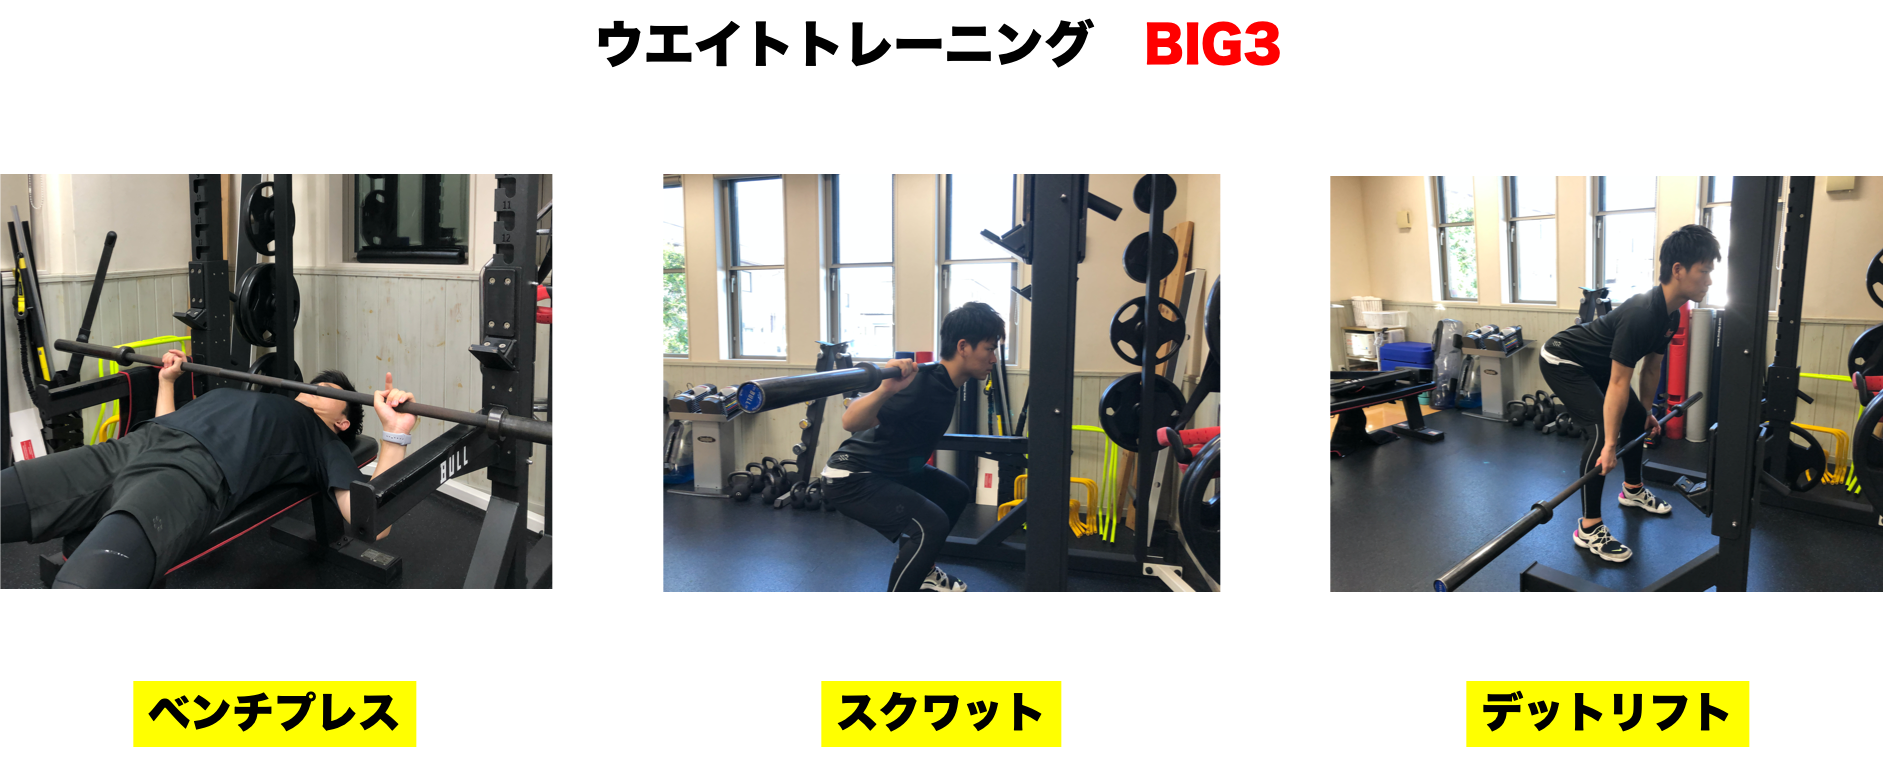 トレーナー廣瀬 ベストボディジャパンへの道のり その 栃木県佐野市のトレーニングジムkcp Training Labのブログ